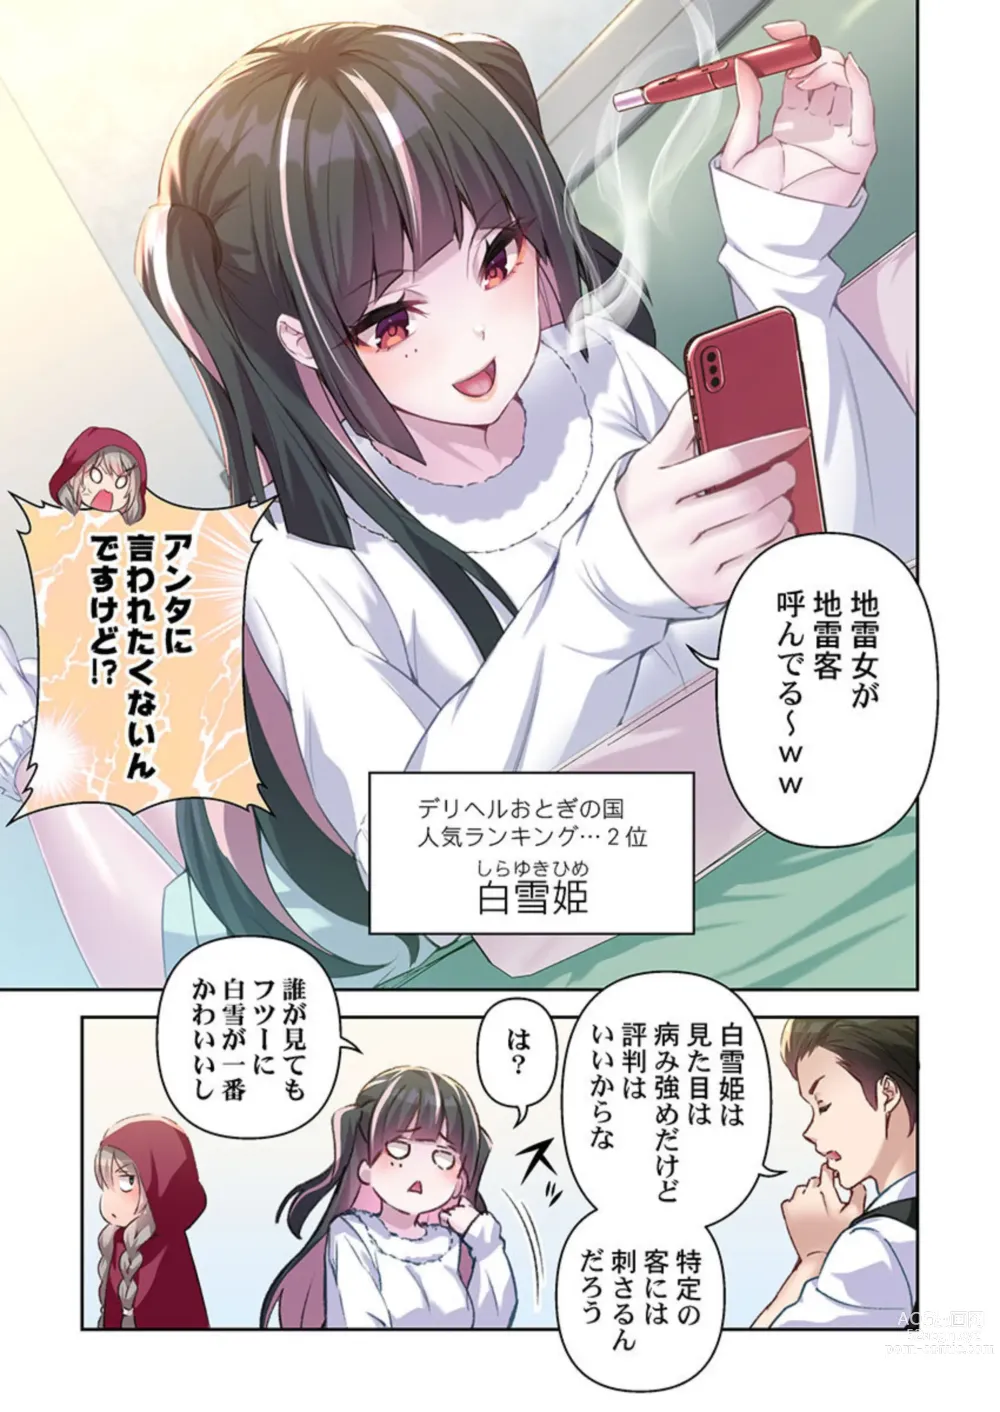 Page 7 of manga DeliHeal Otogi no Kuni 1